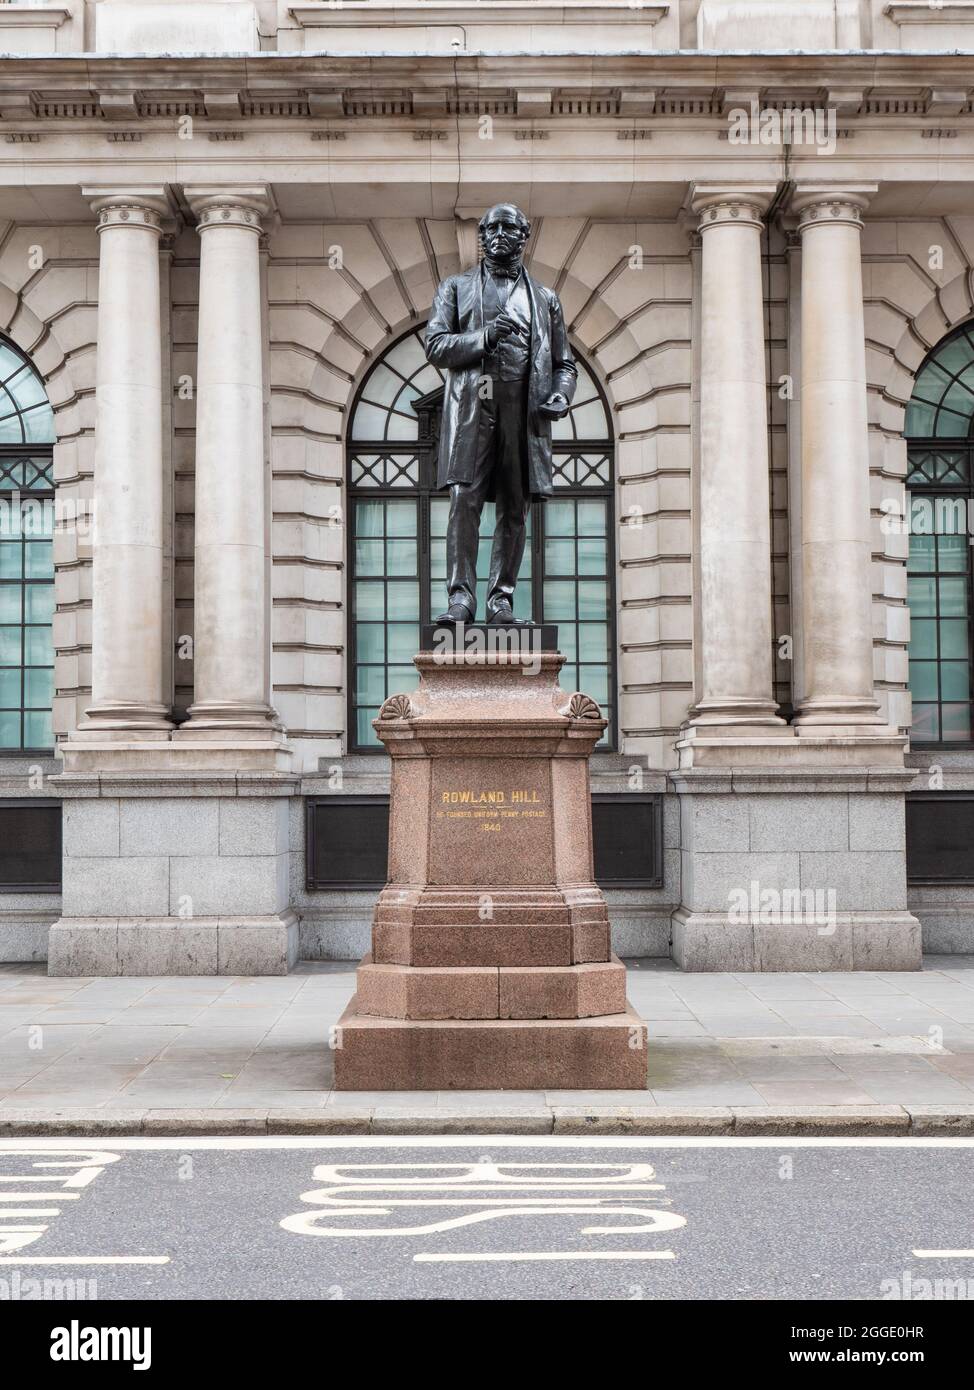 Statua di Rowland Hill, Londra. Un omaggio al riformatore sociale britannico che ha ideato il sistema postale britannico basato sul concetto di affrancatura prepagata. Foto Stock